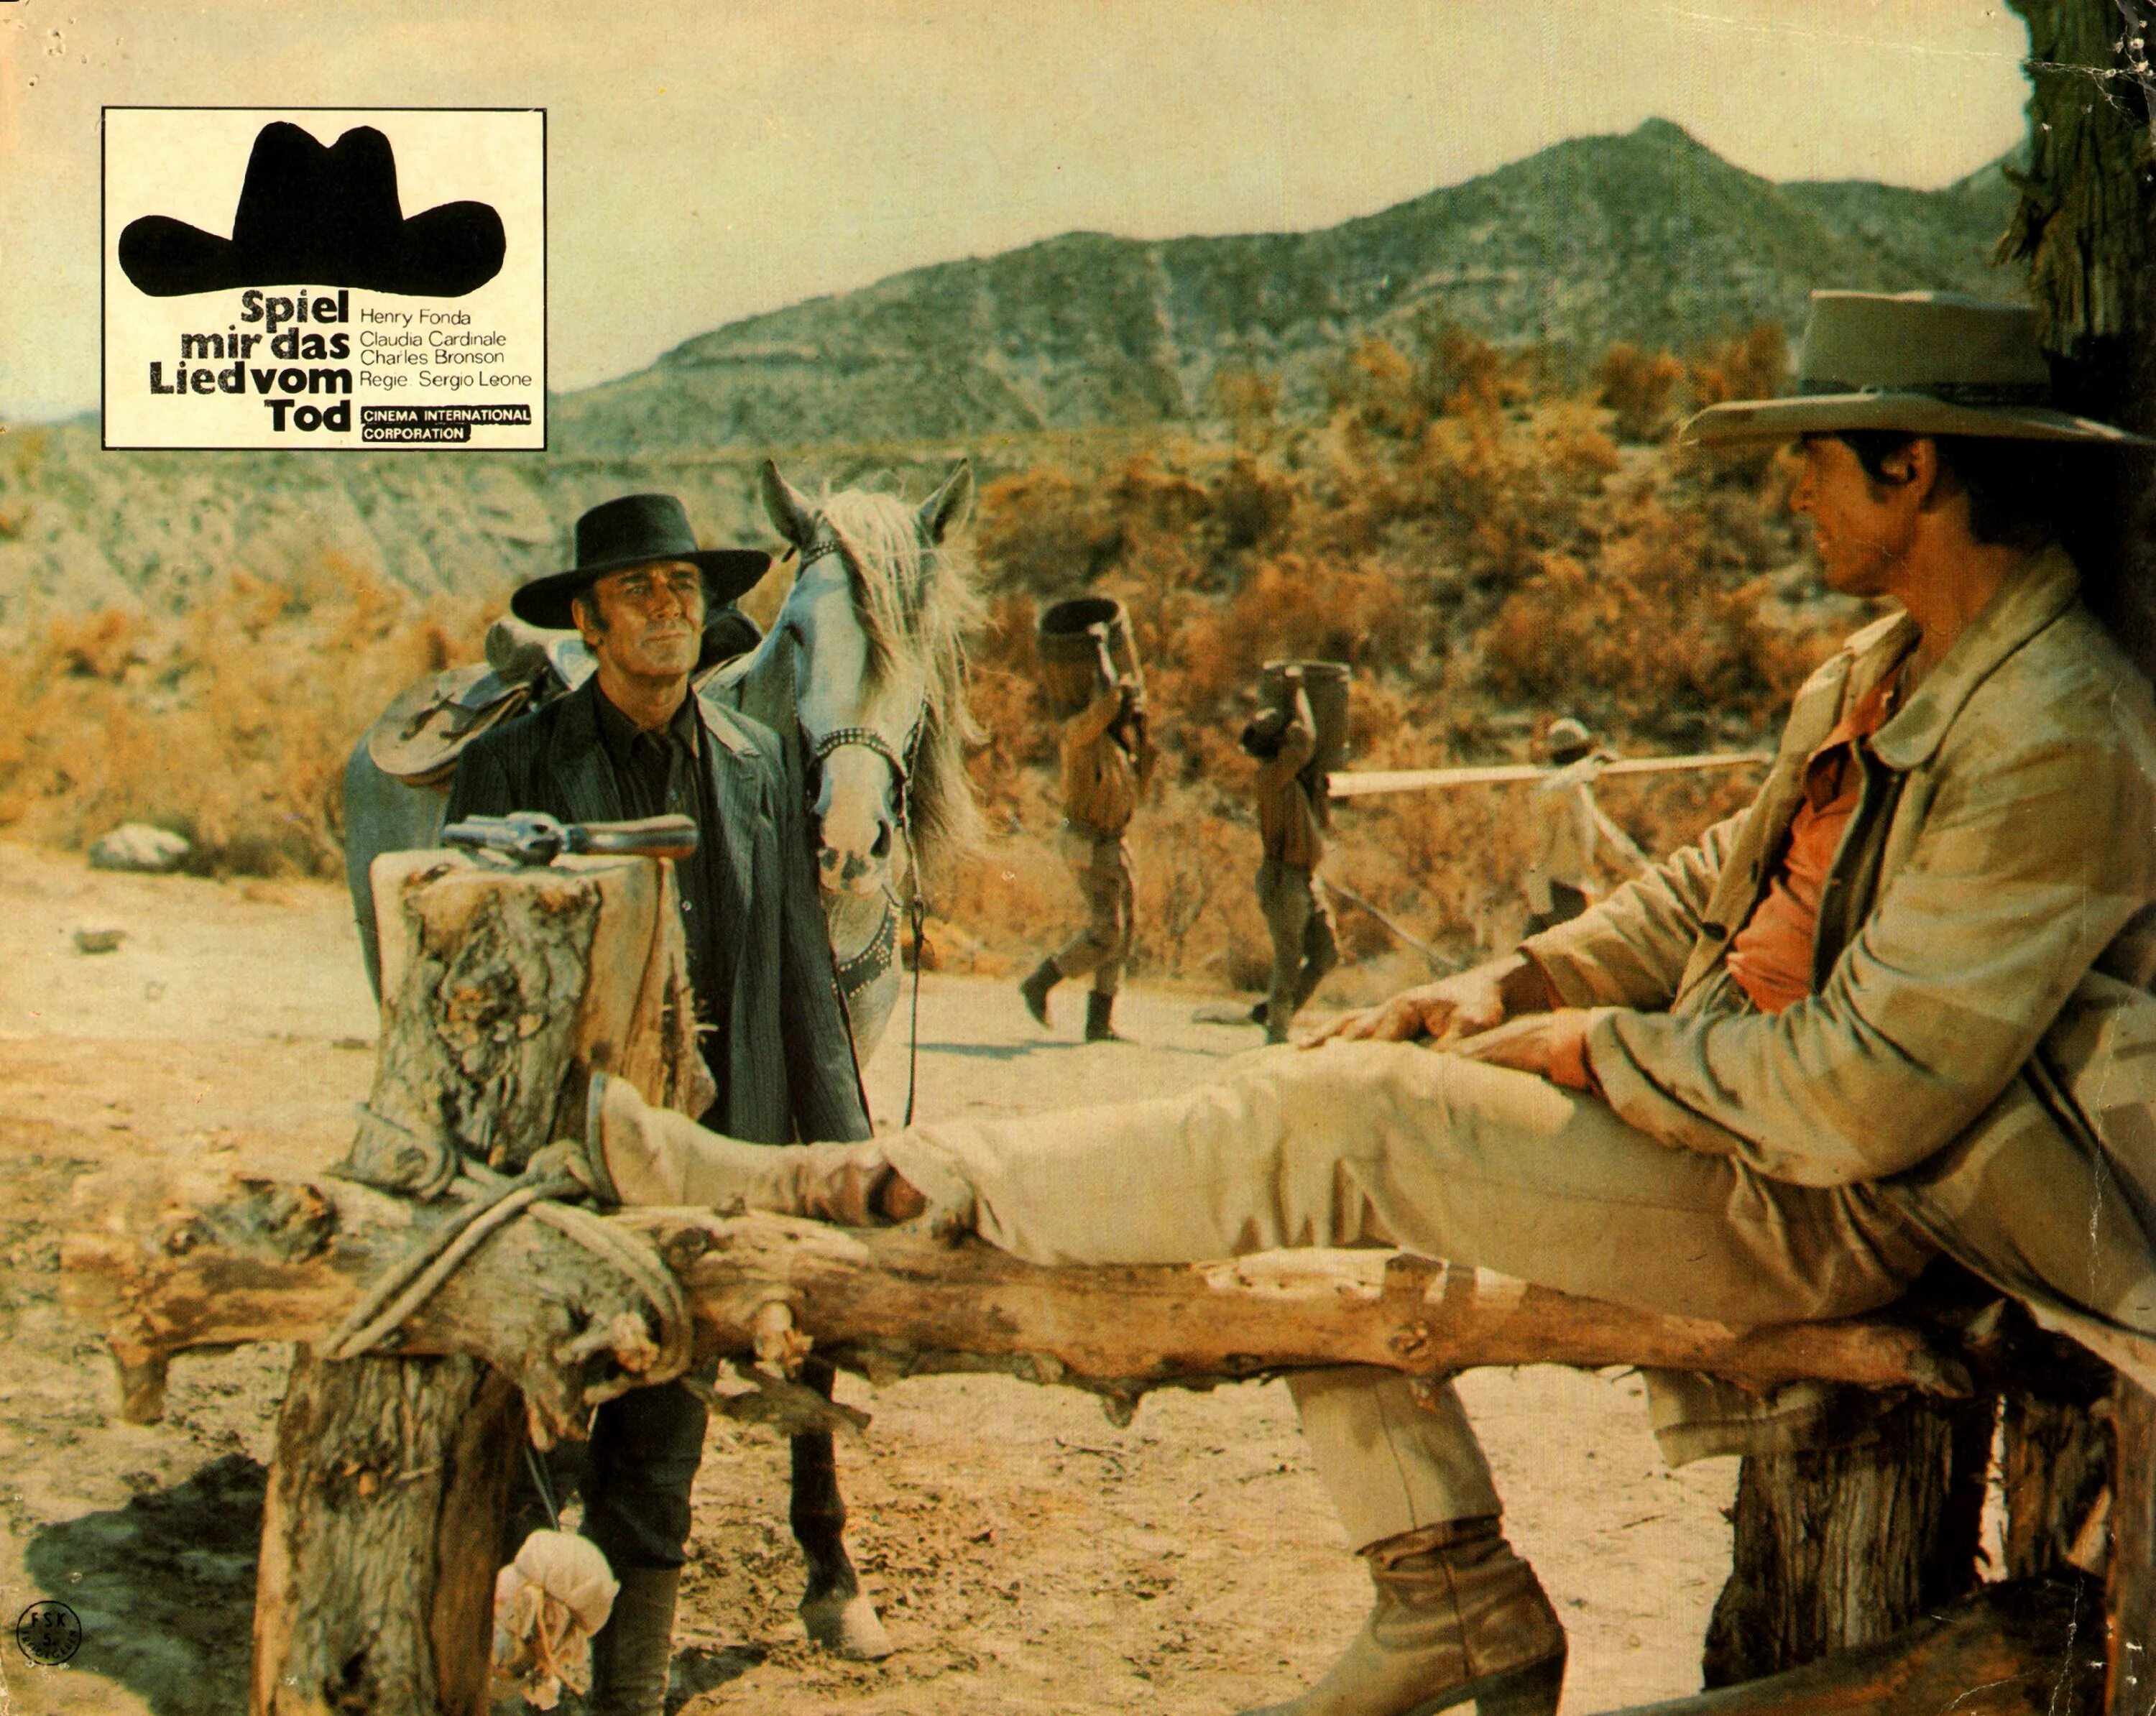 Дикий на каком канале. «Однажды на диком западе», 1968, реж. Серджио Леоне. Серджио Леоне однажды на диком западе.